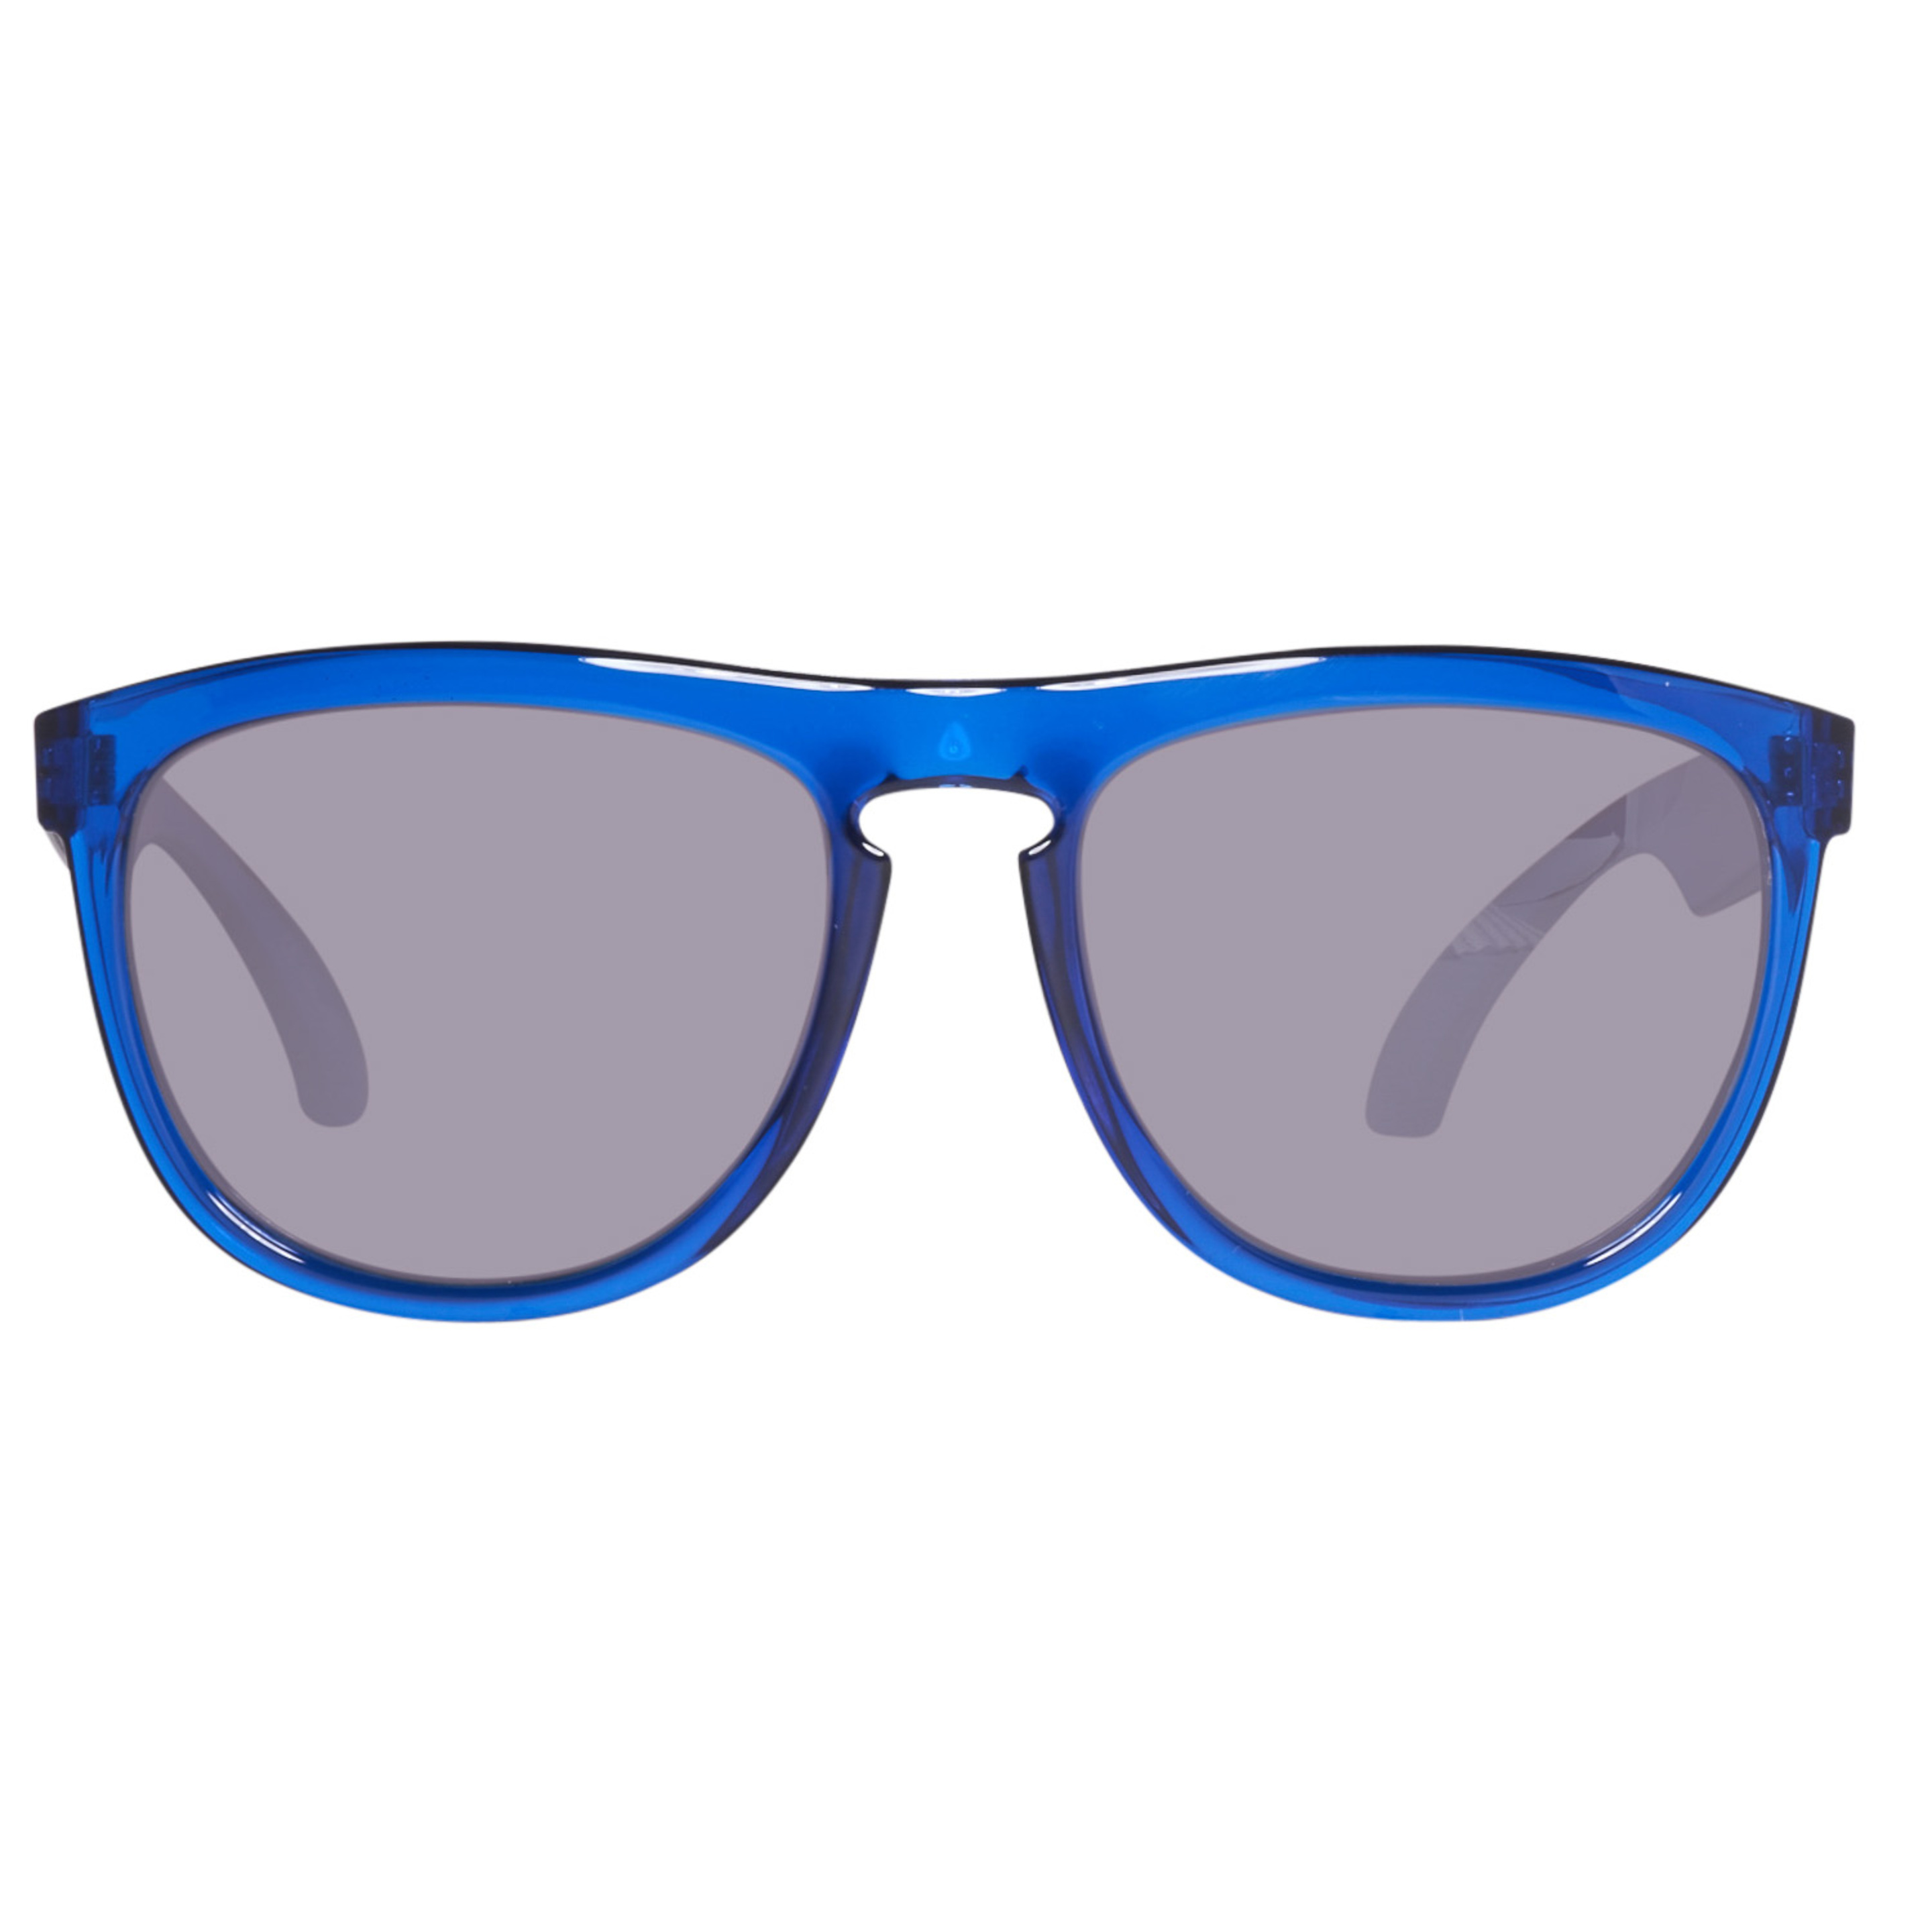 Gafas De Sol Benetton Be993s04 - Azul  MKP